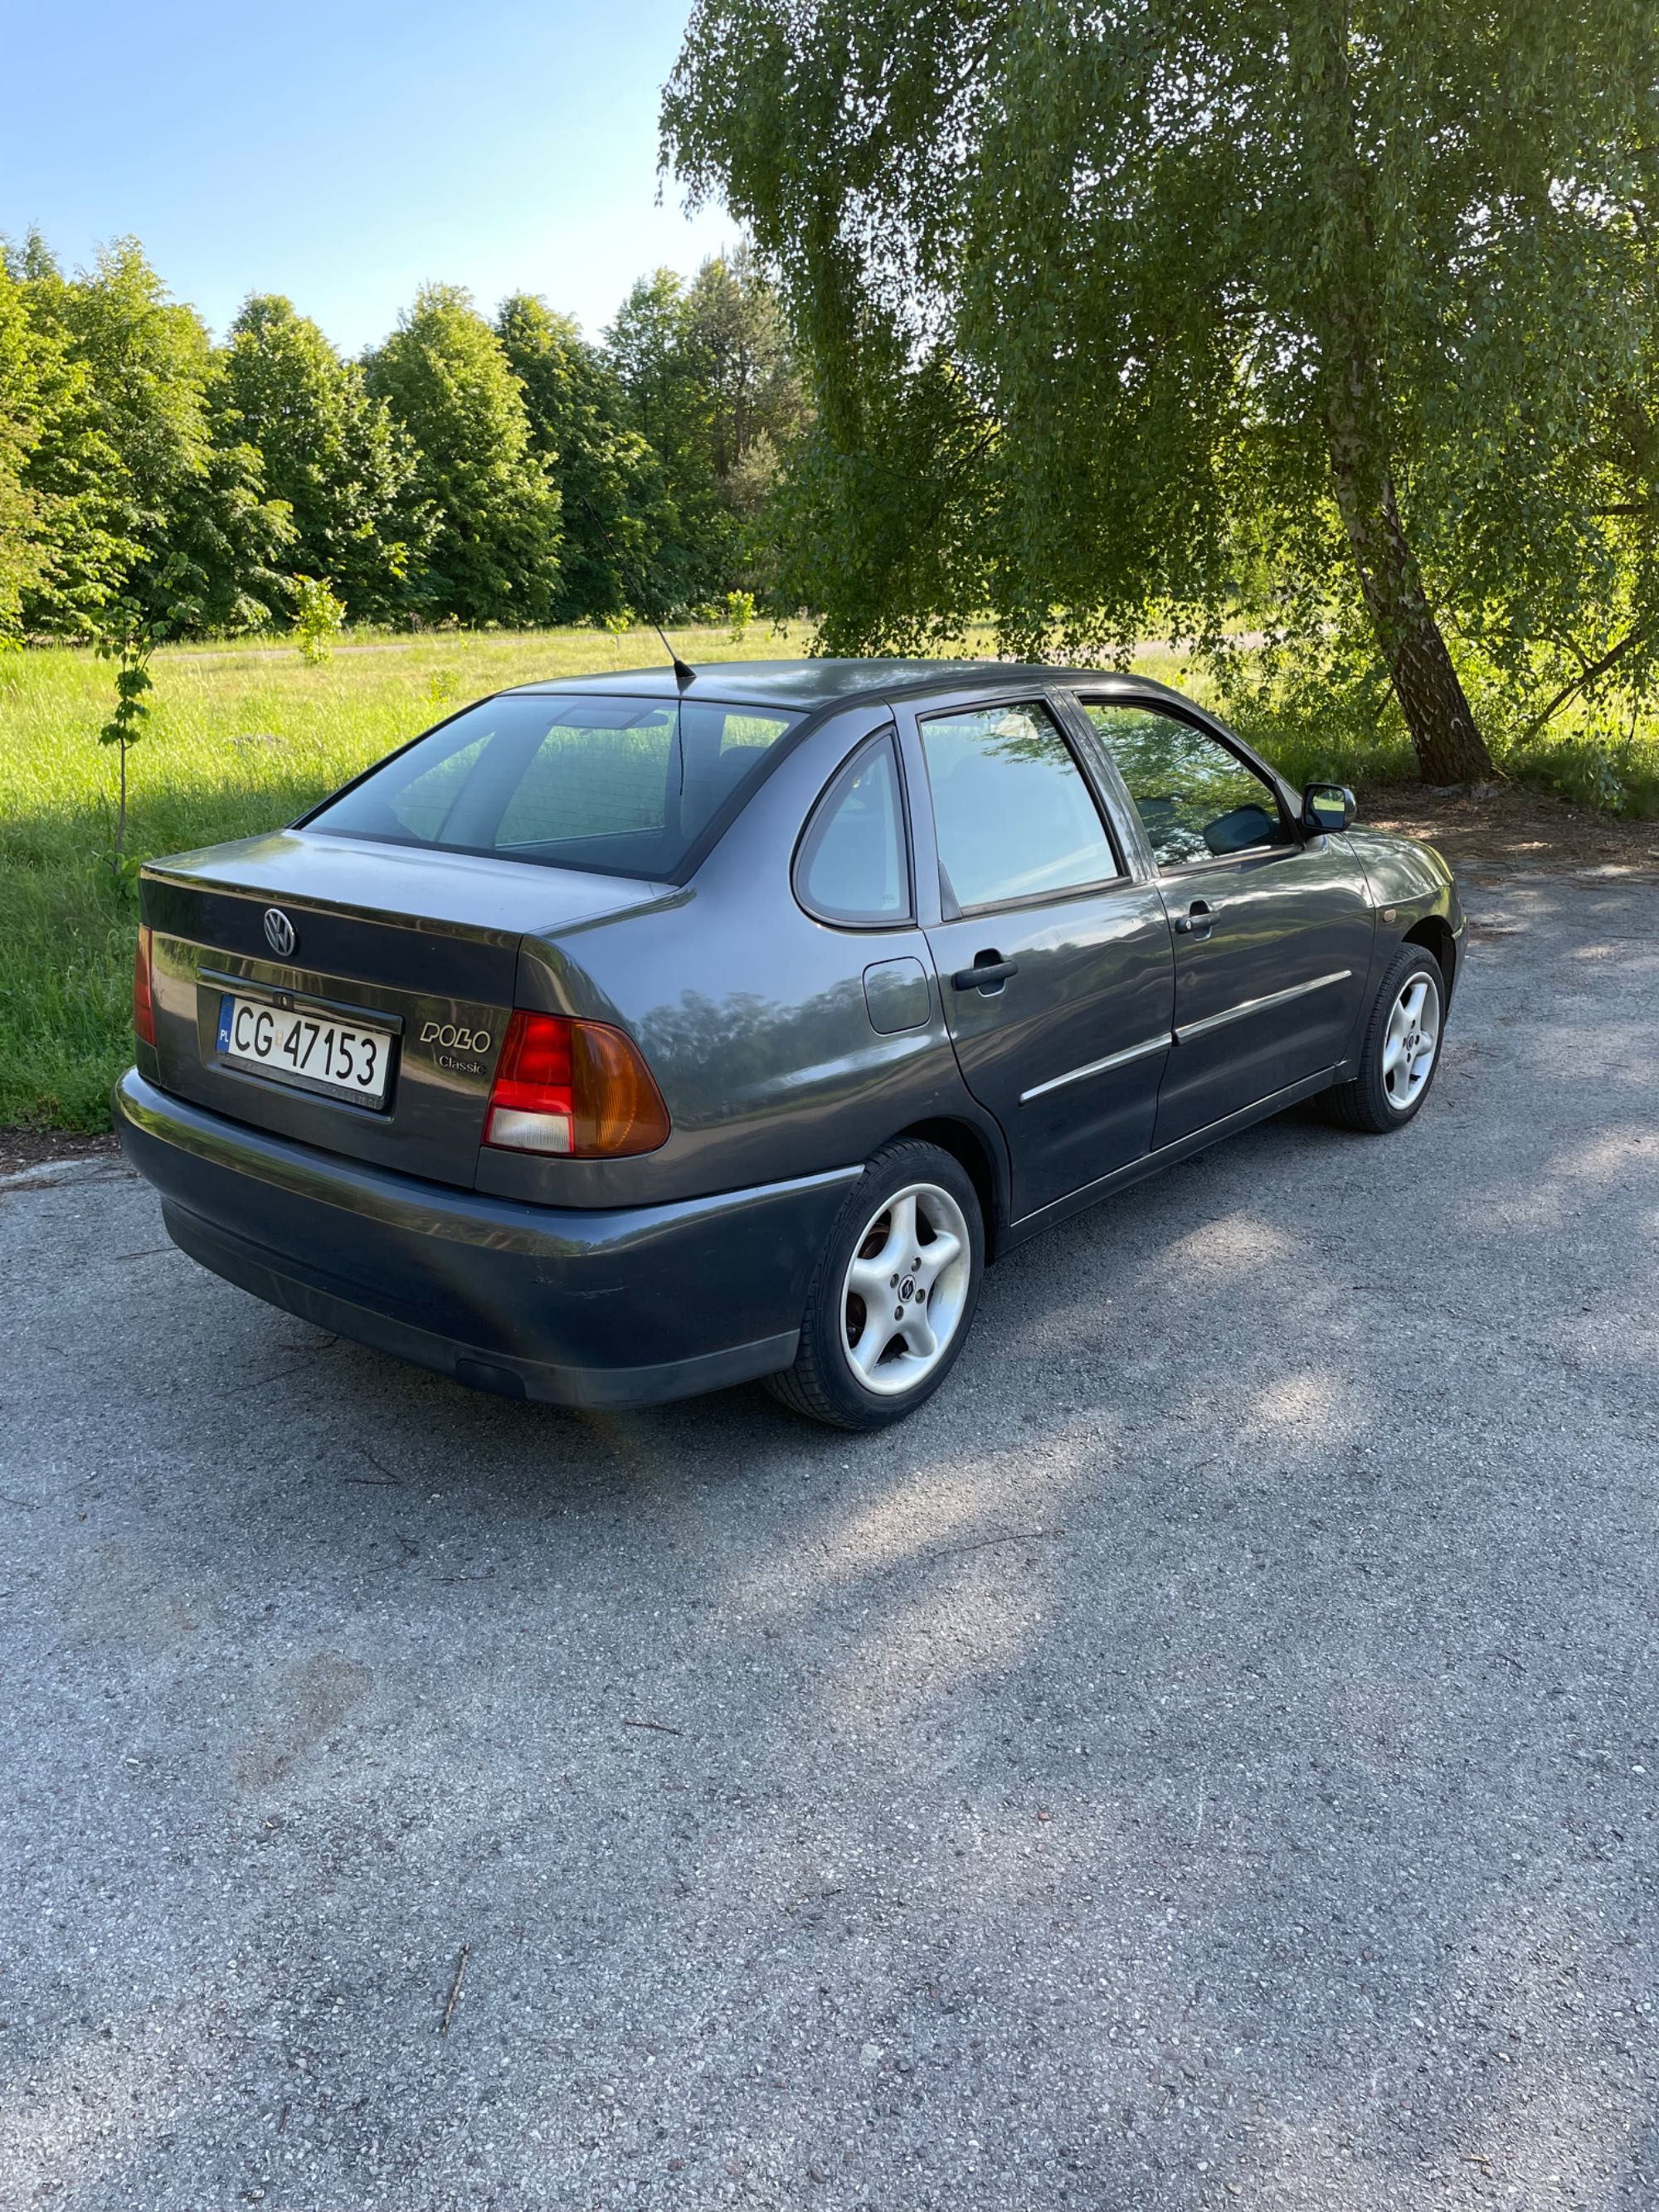 VW Polo Classic 1,4 benzyna 1998 r ładny stan